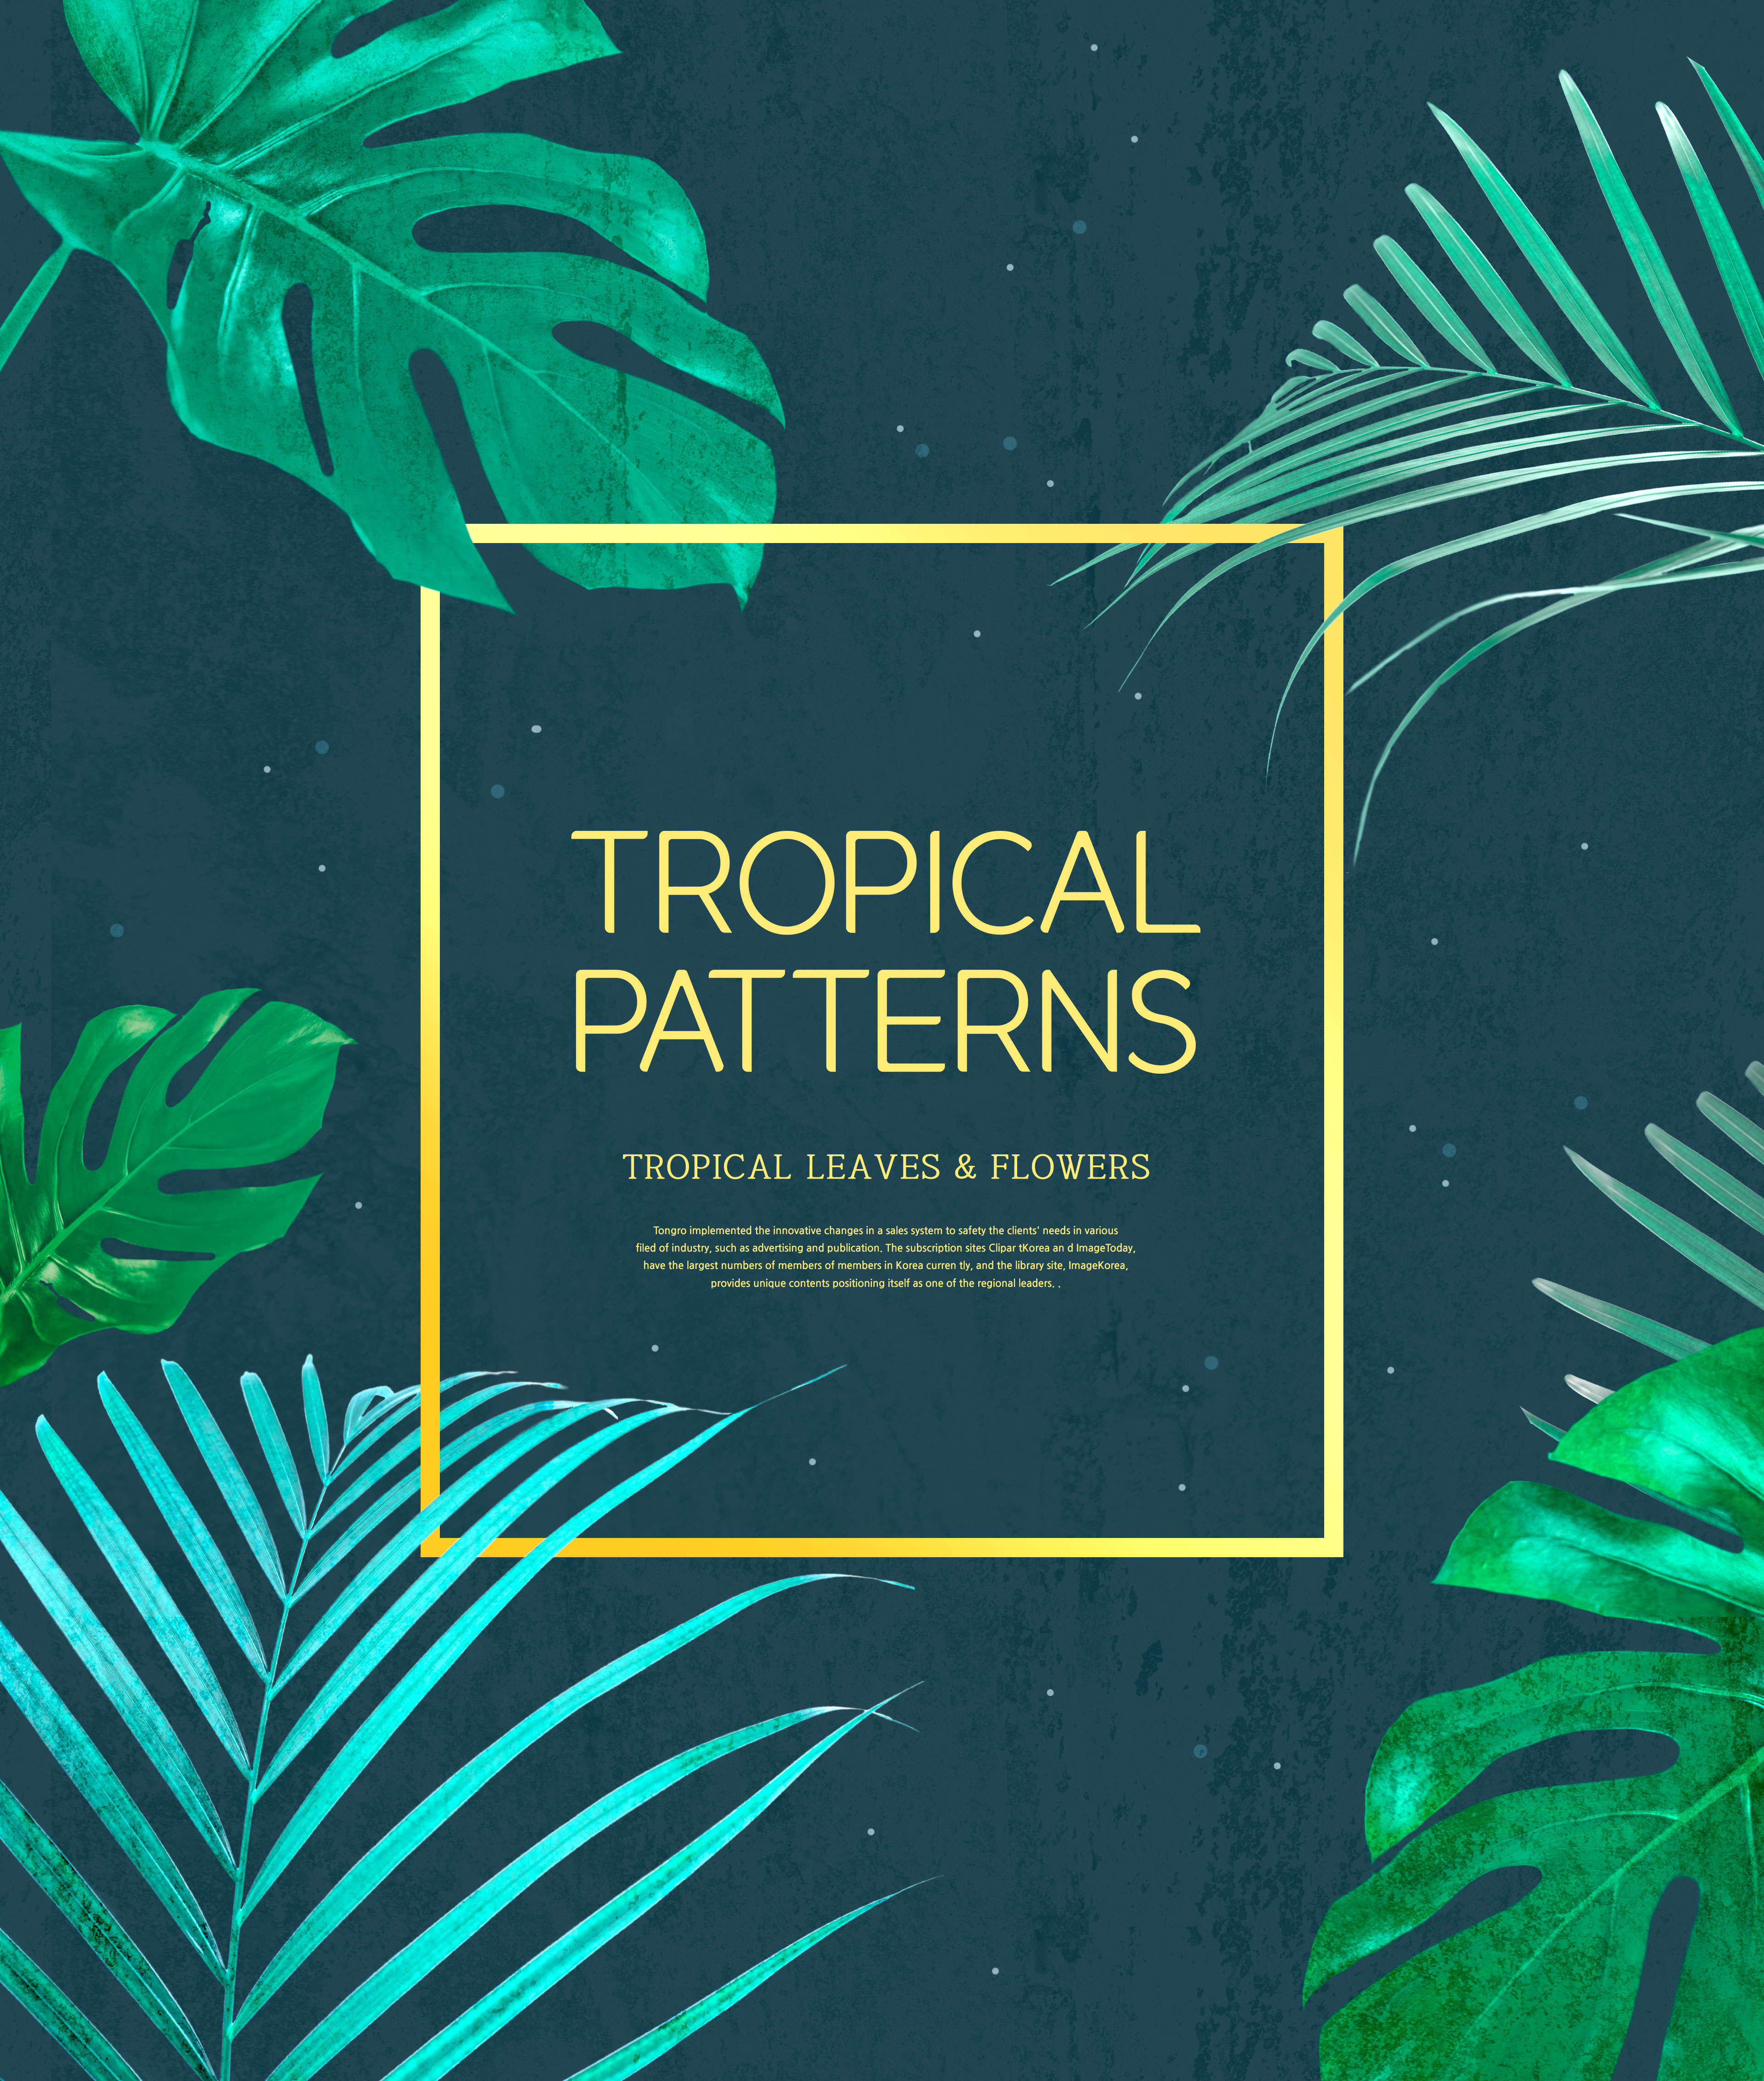 热带植物叶子&花卉图案海报设计素材插图